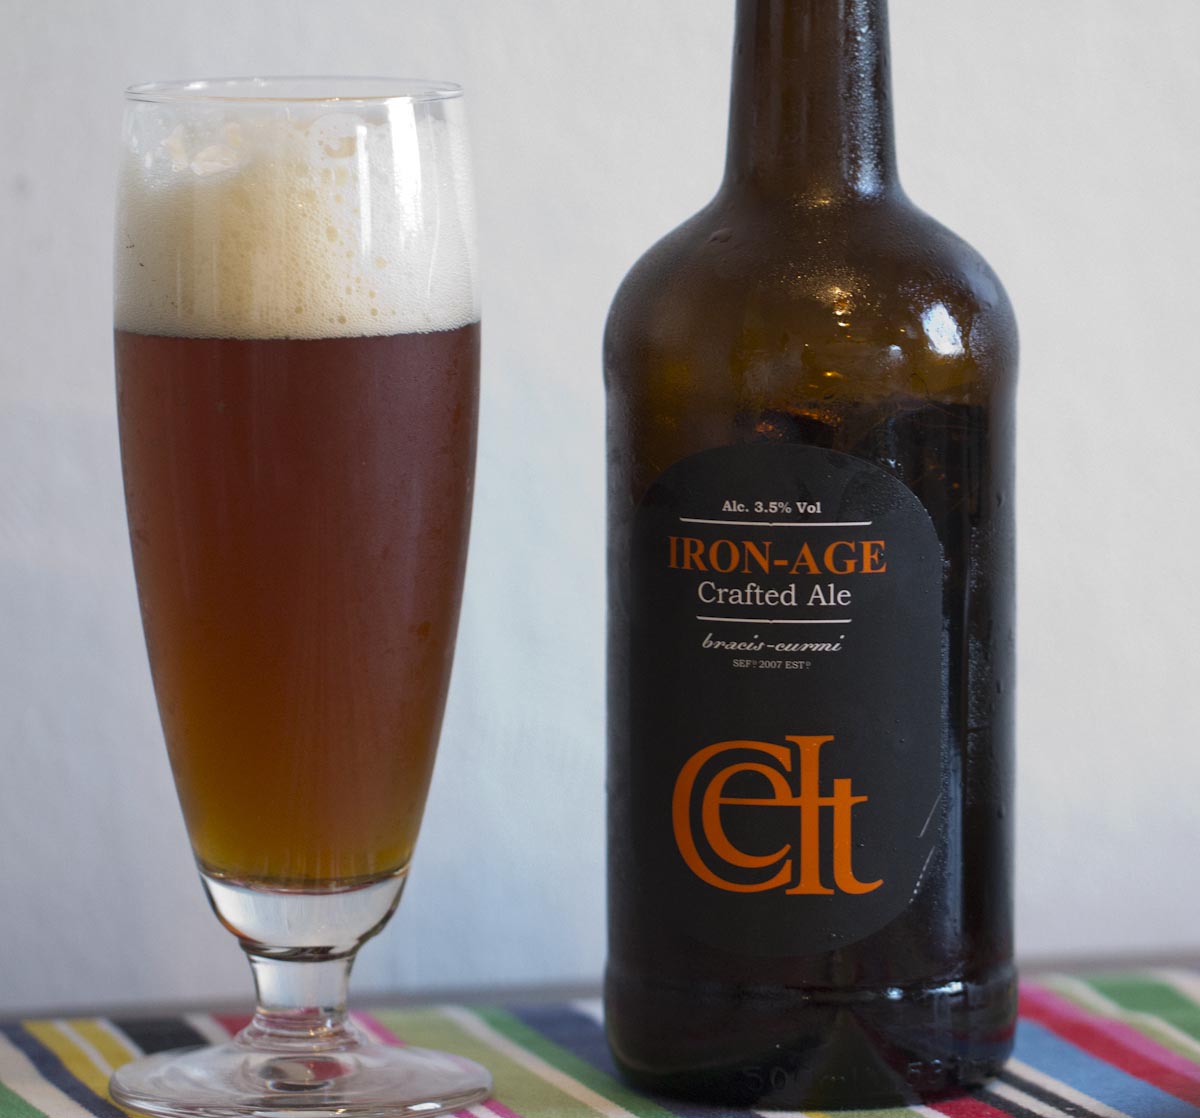 Iron-Age öl från Wales